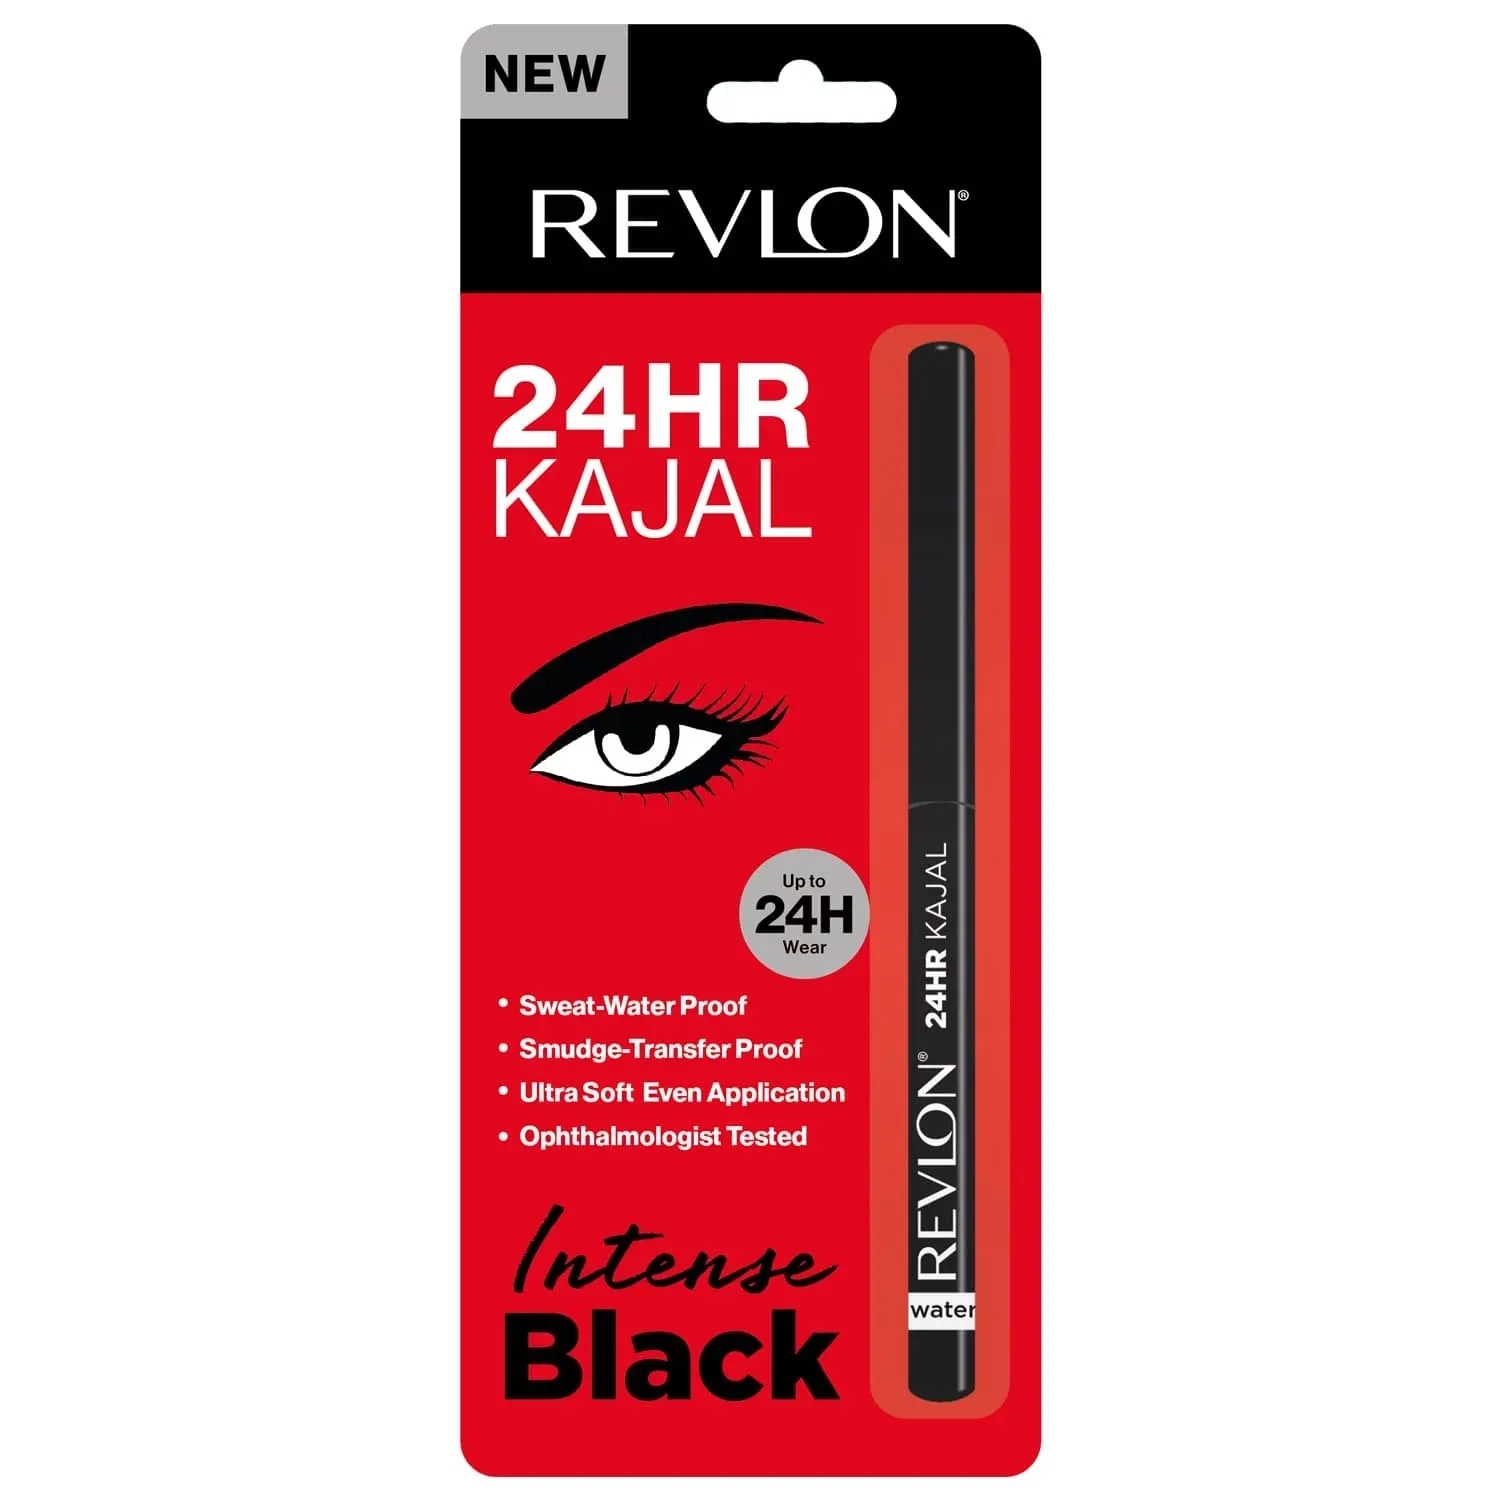 Revlon 24HR Kajal - Intense Black (0.35g)